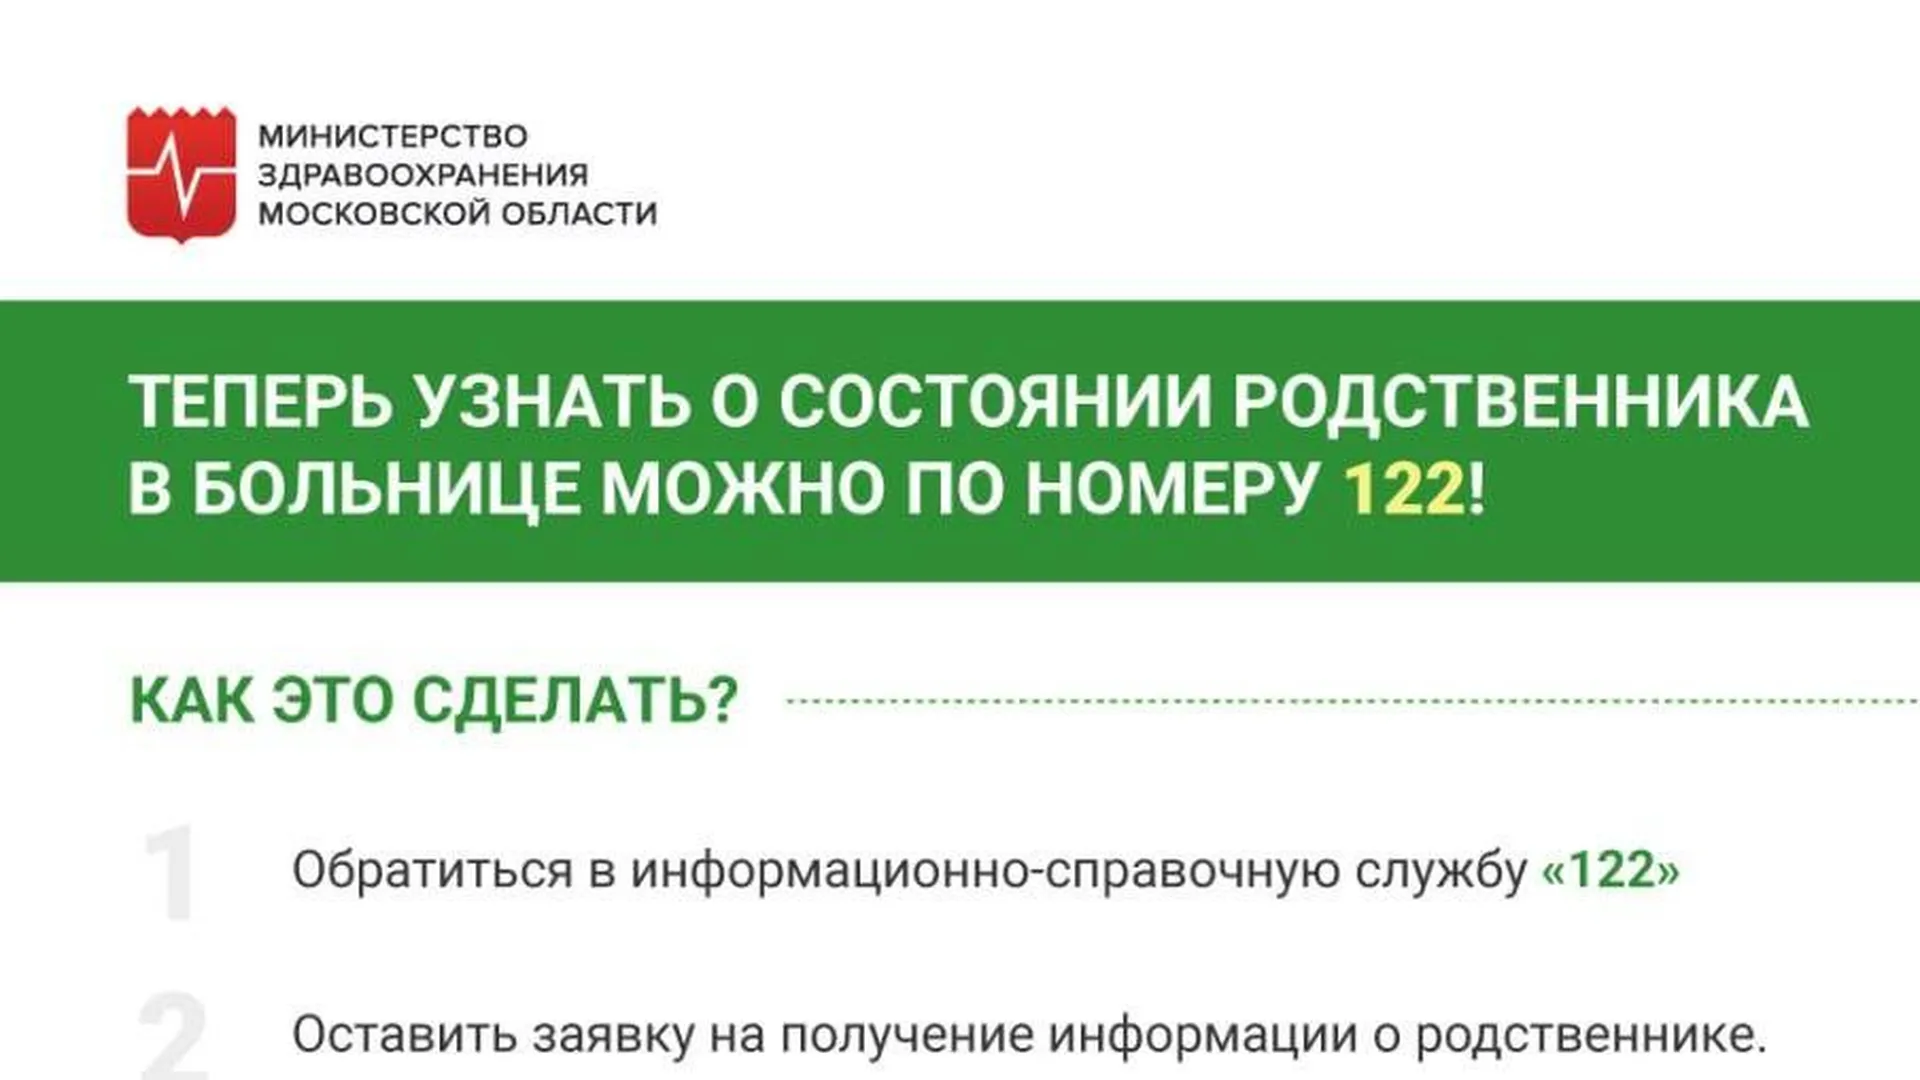 4 тыс раз в Подмосковье узнали о состоянии родственника в больнице по номеру 122